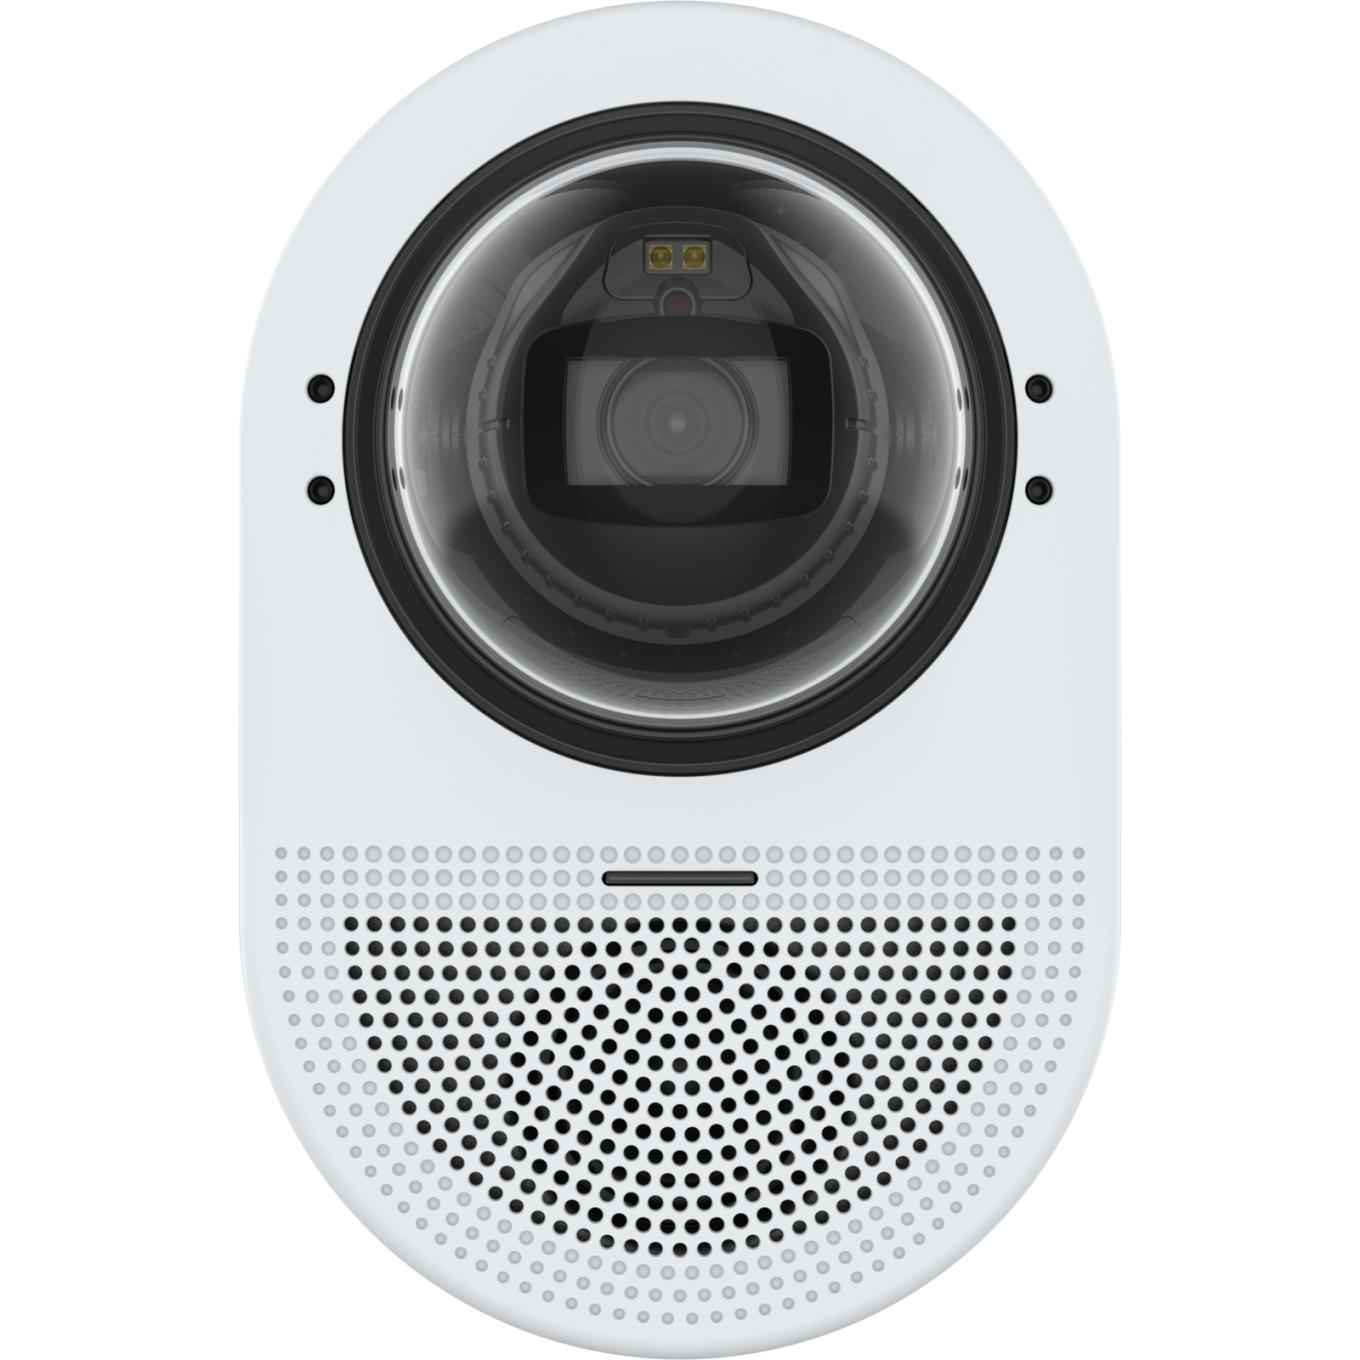 AXIS Q9307-LV Dome Camera montada na parede